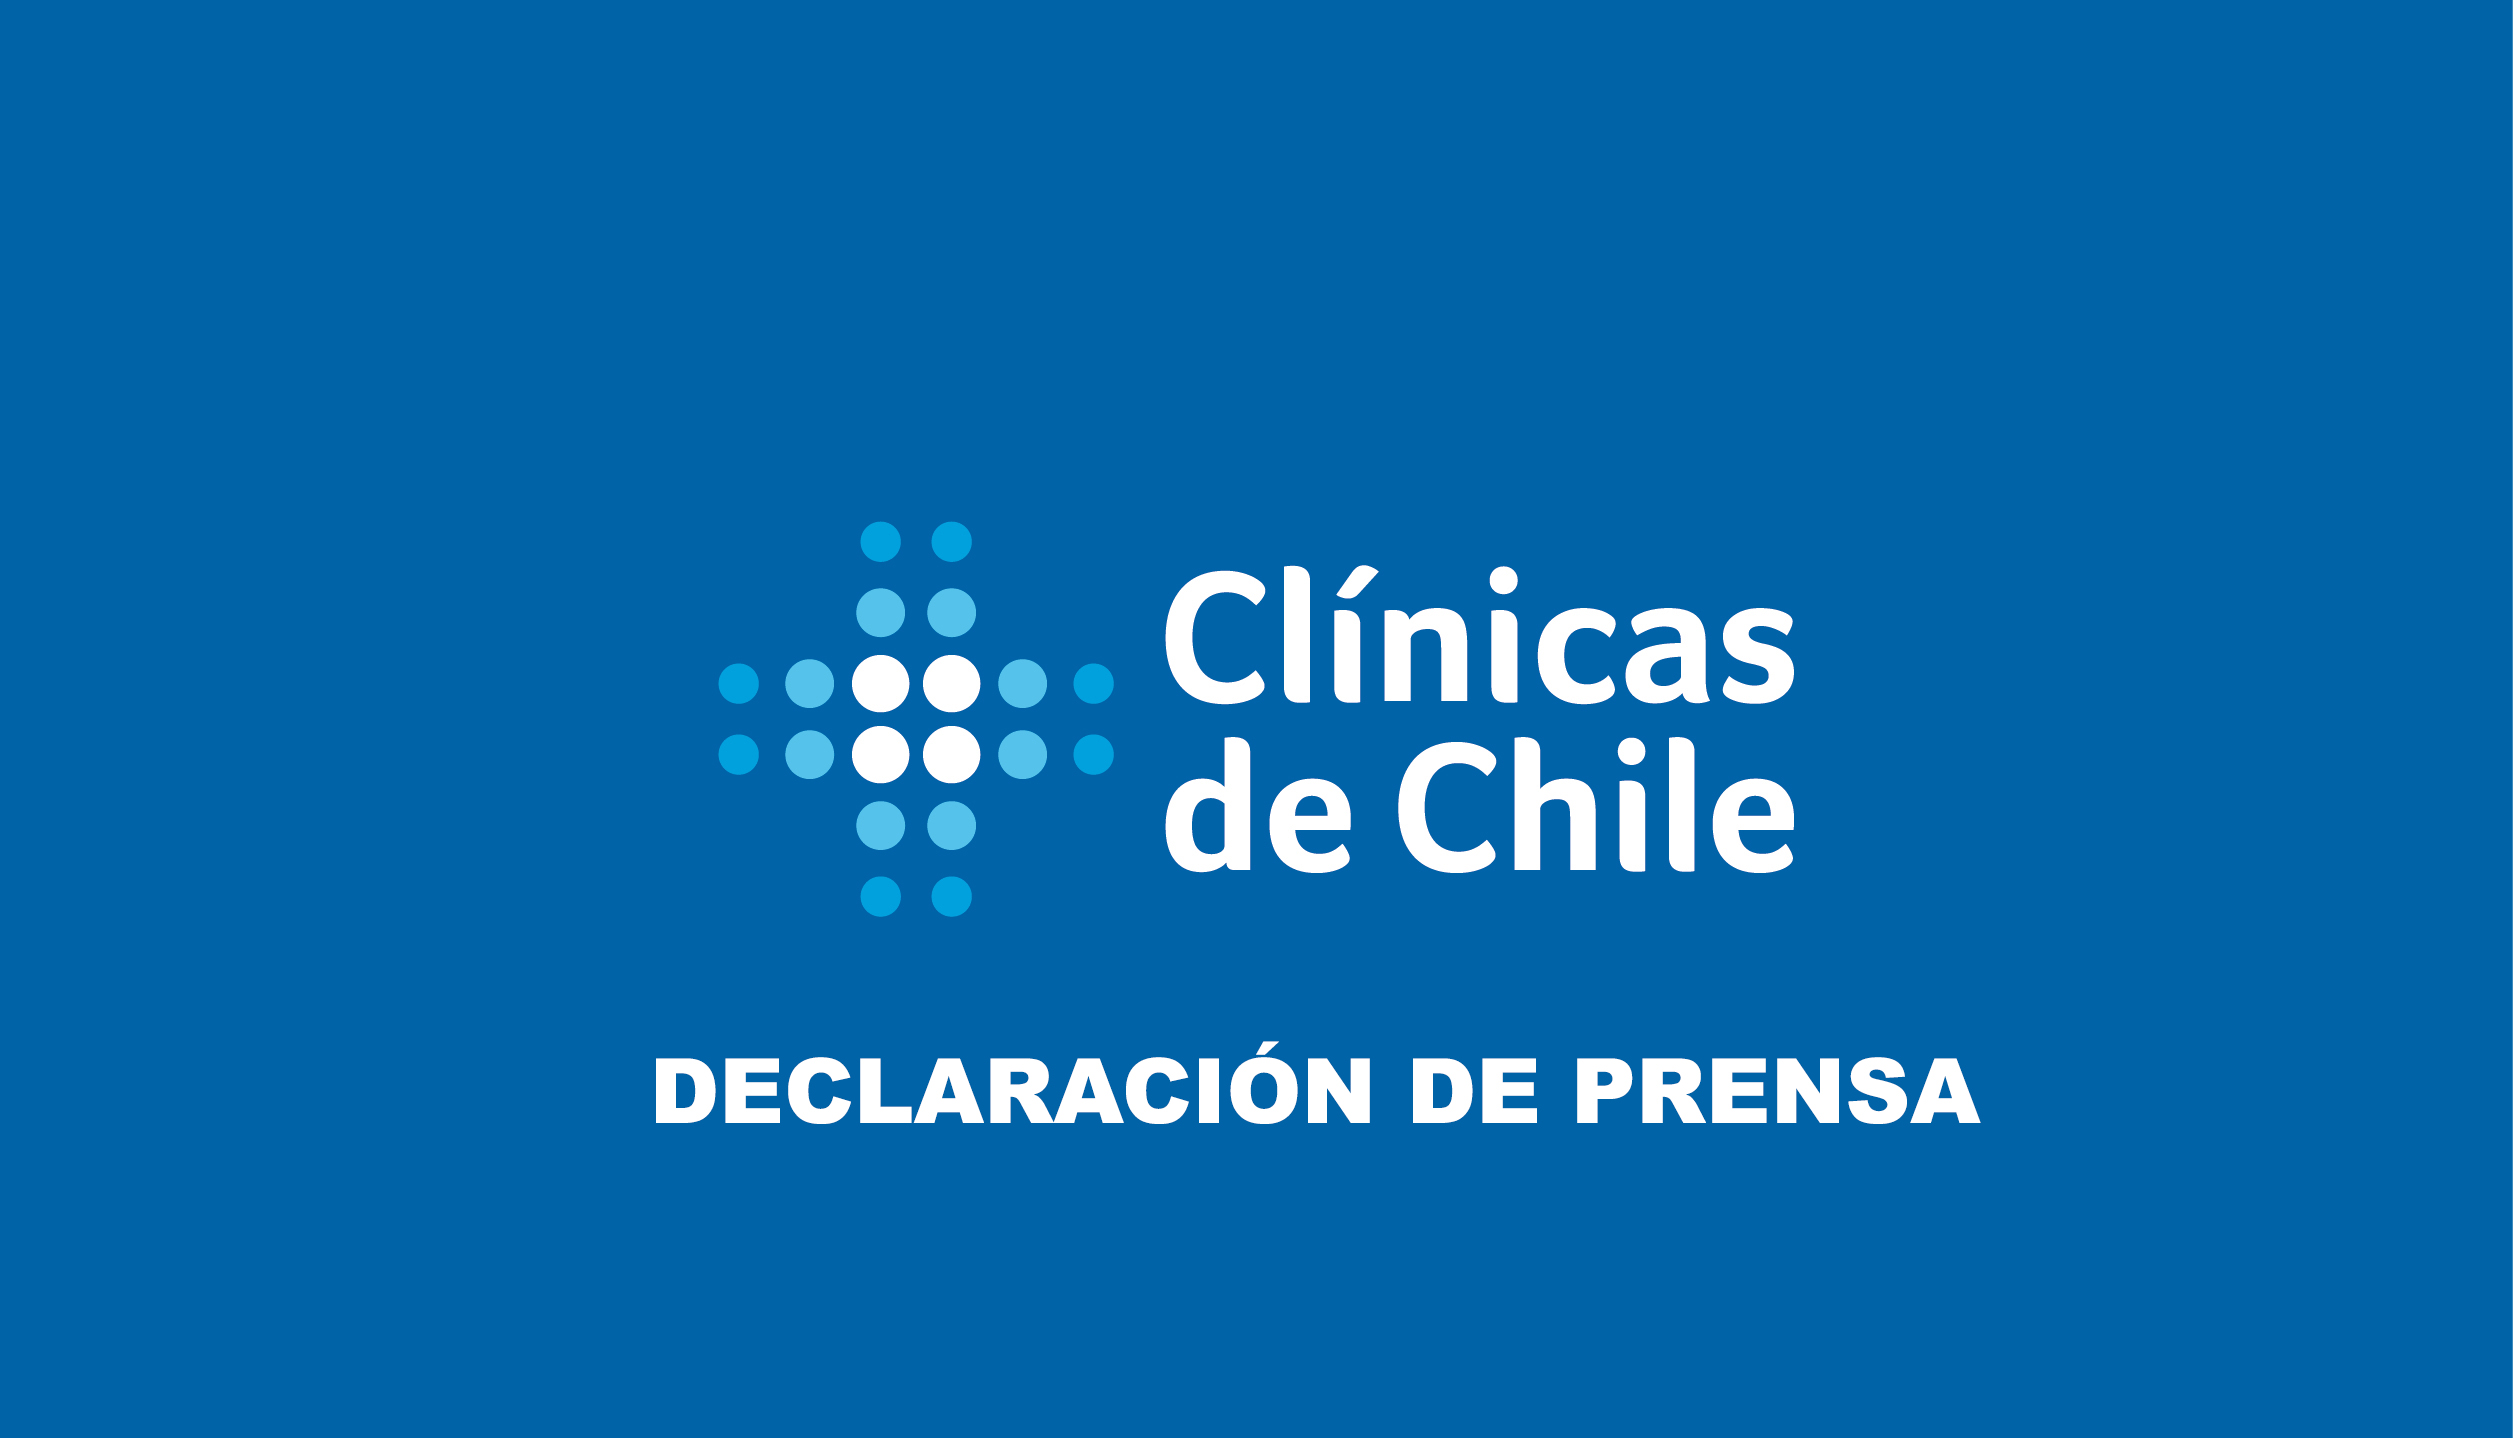 Copia de Original Logotipo Clinicas de Chile Negativo color